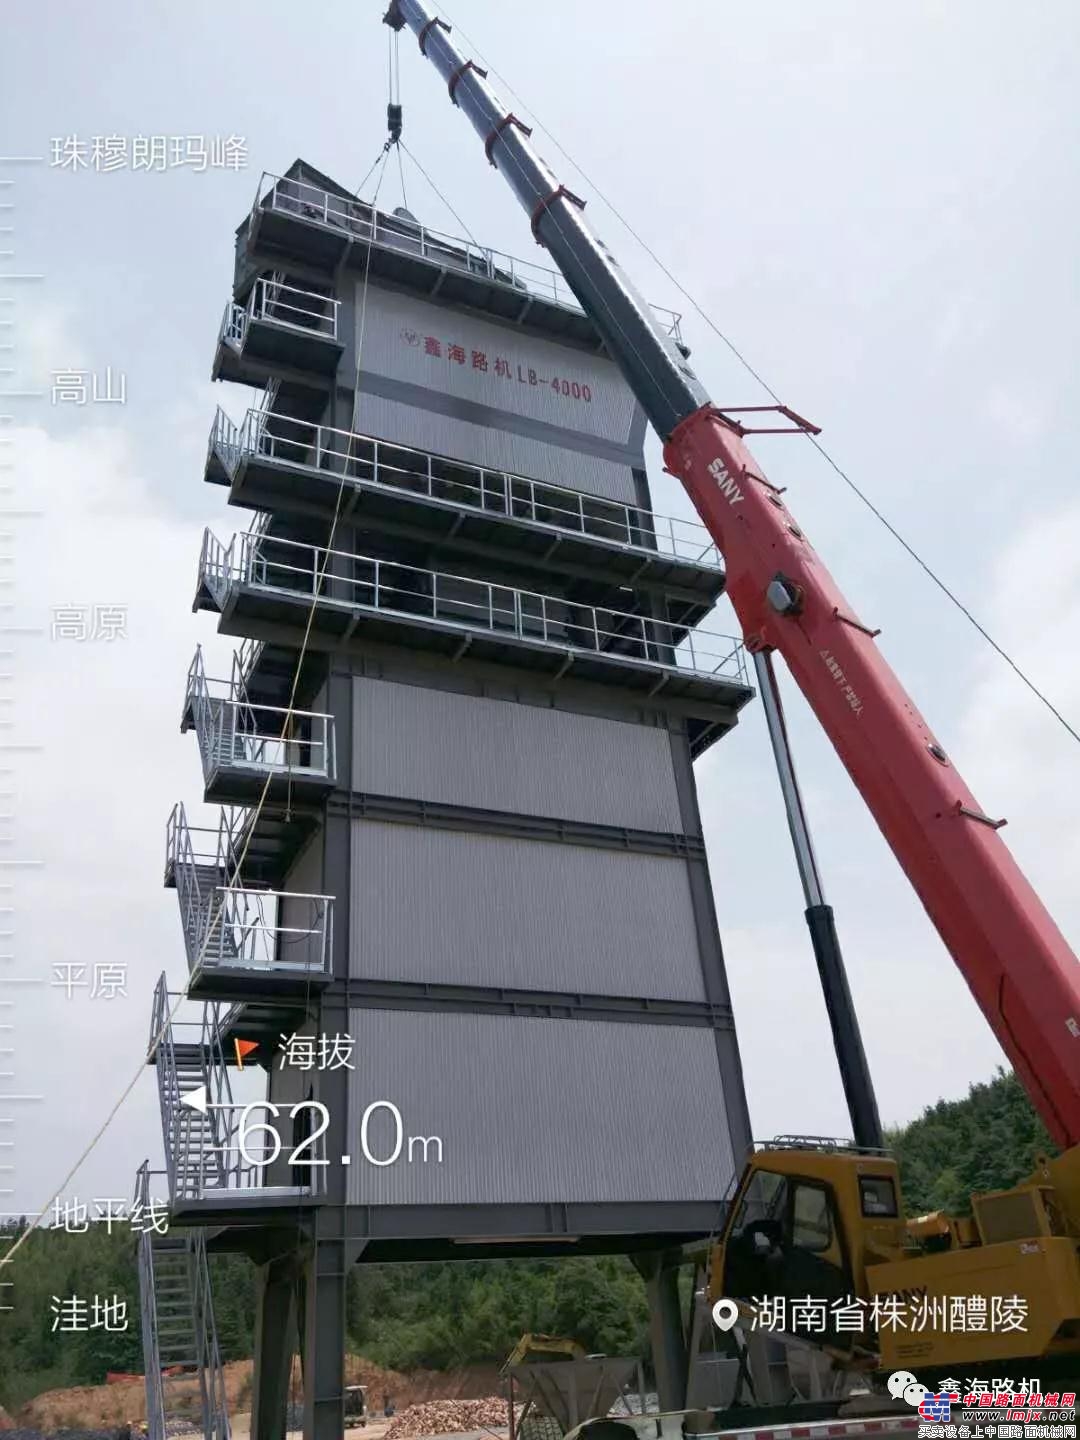 贺鑫海路机LB—4000型沥青搅拌站在湖南醴陵安装成功